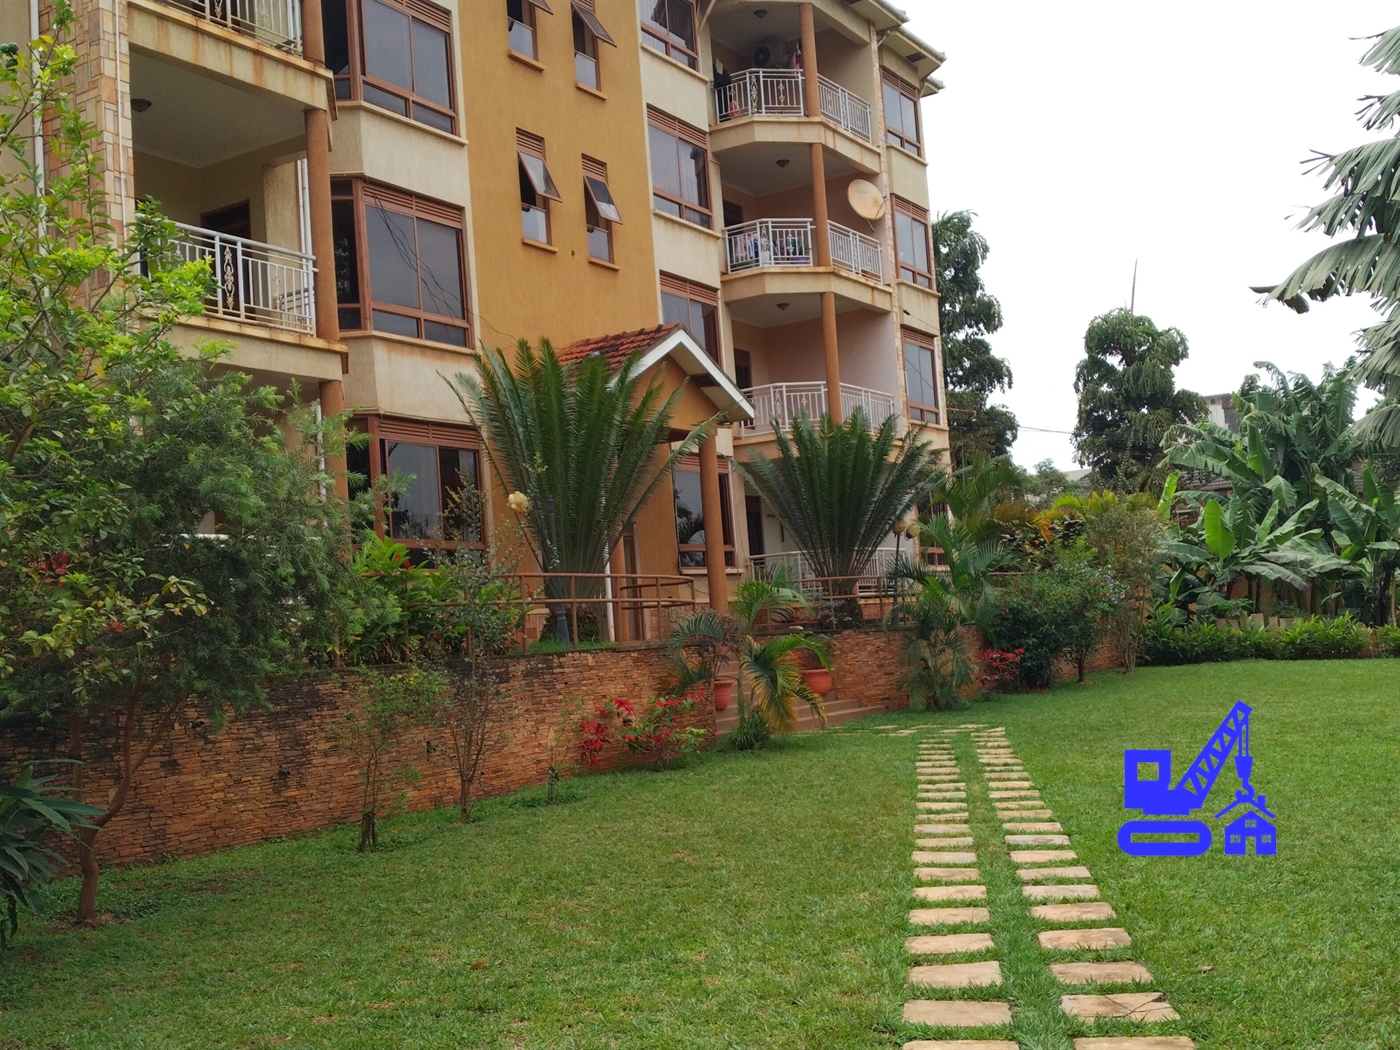 3 Bedroom Apartment For Rent In Naguru Kampala Uganda Code 1249 04 10 22